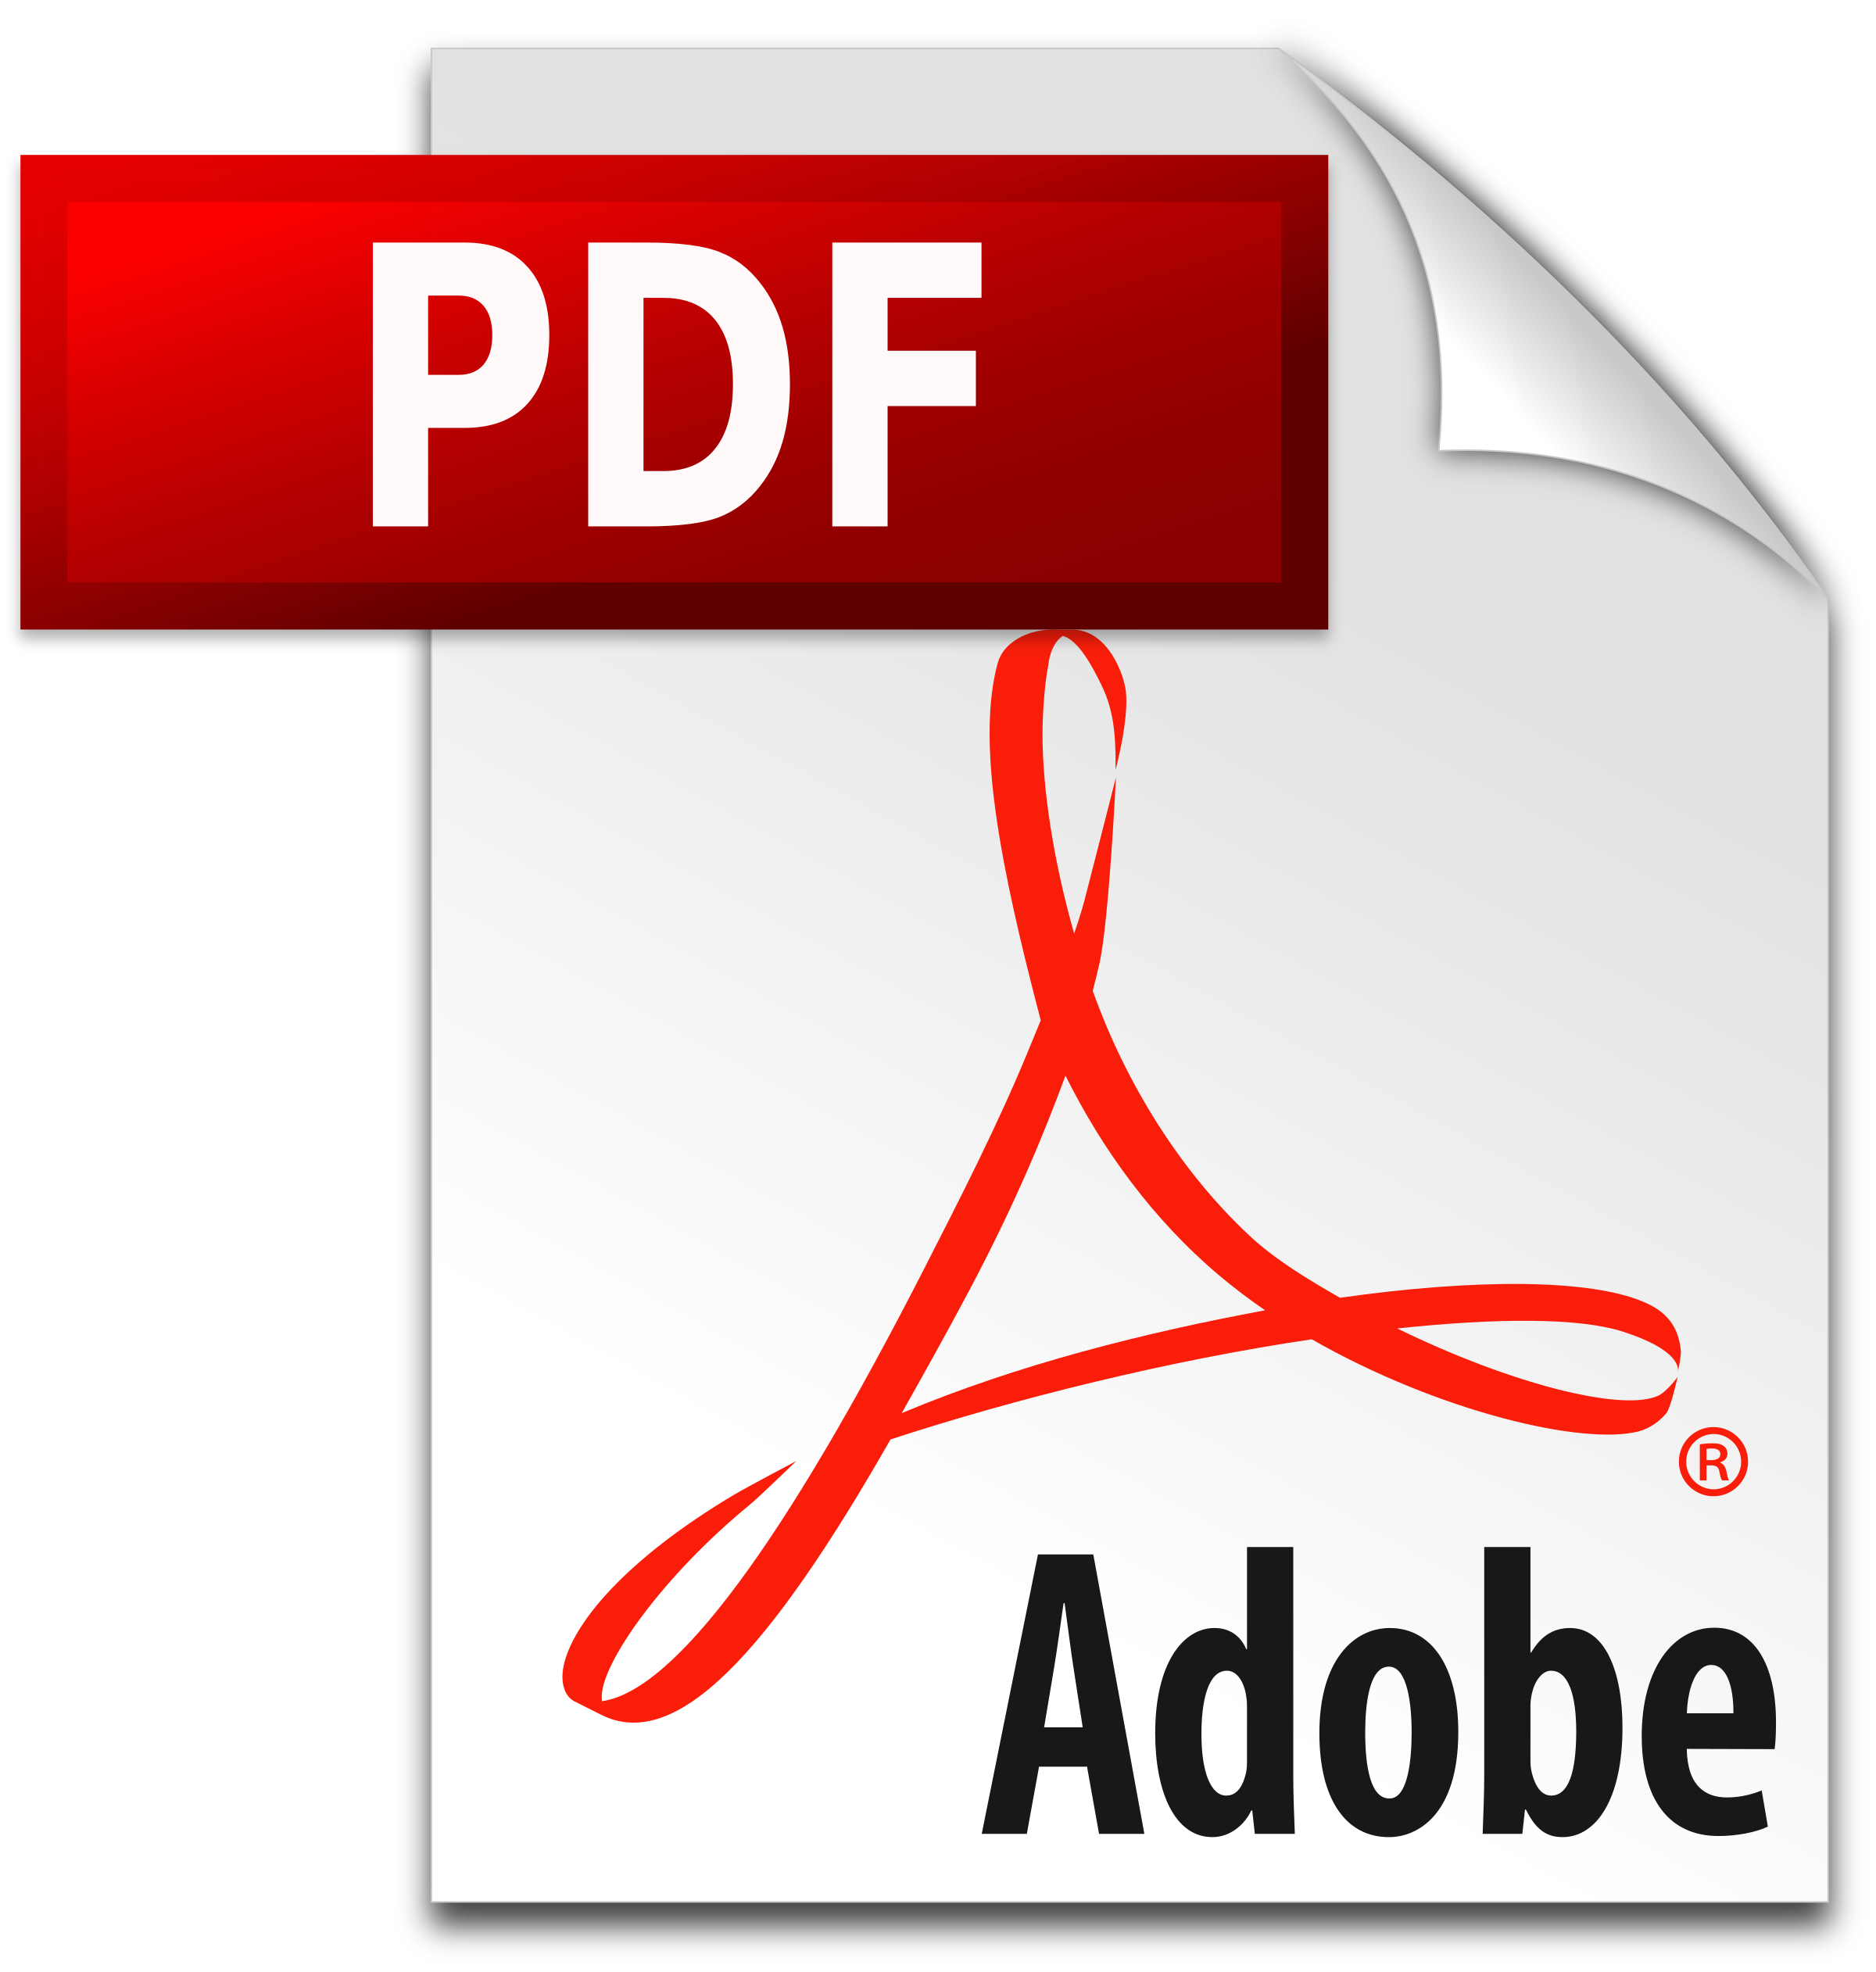 Pdf File Format Symbol - Free